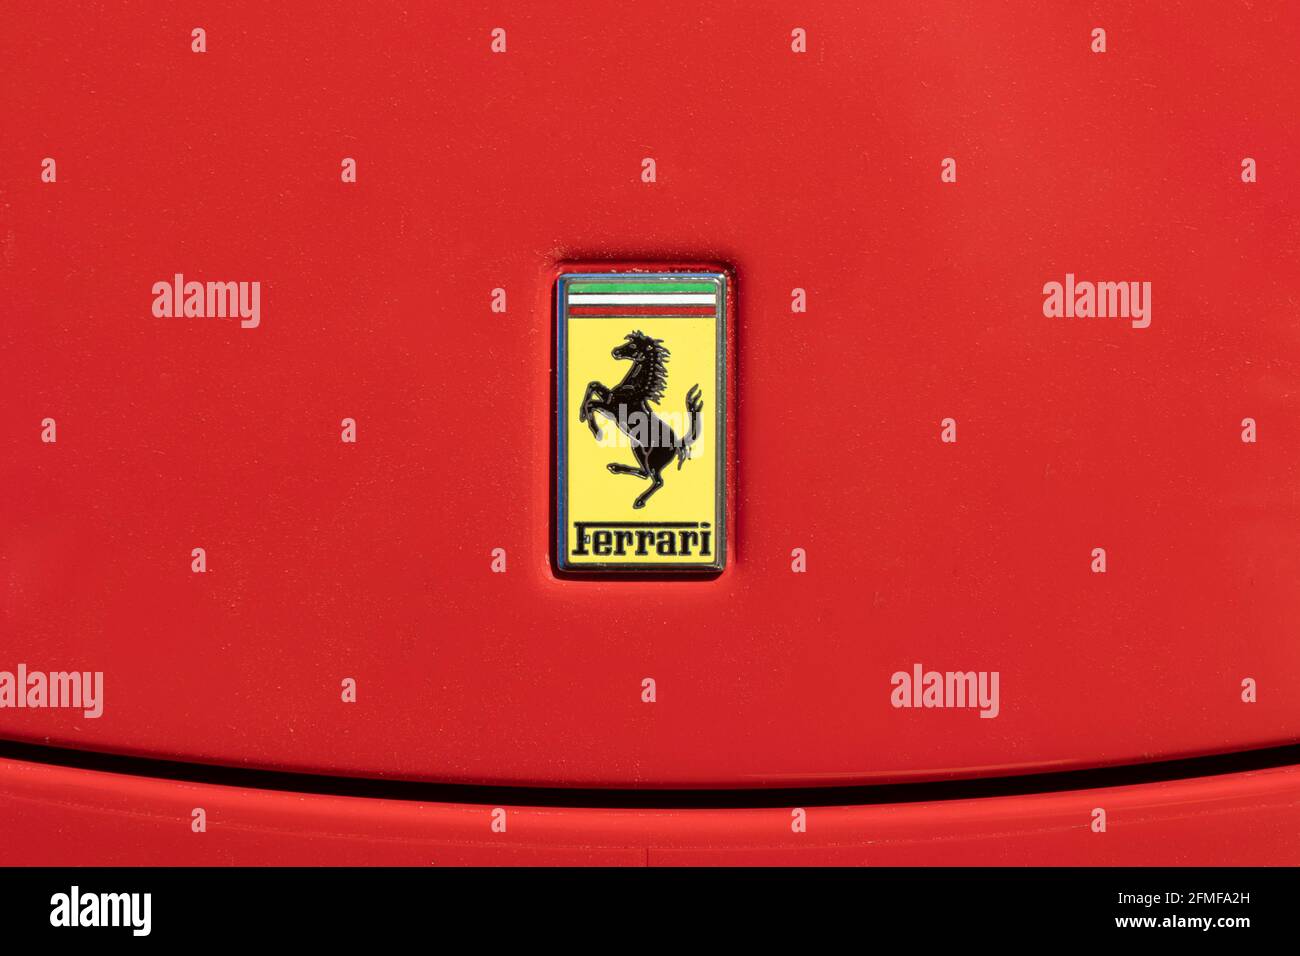 BARCELLONA, SPAGNA-8 MAGGIO 2021: Il logo Ferrari Cavallino Rampante ('cavallo pancante') sul cofano dell'auto reale Foto Stock